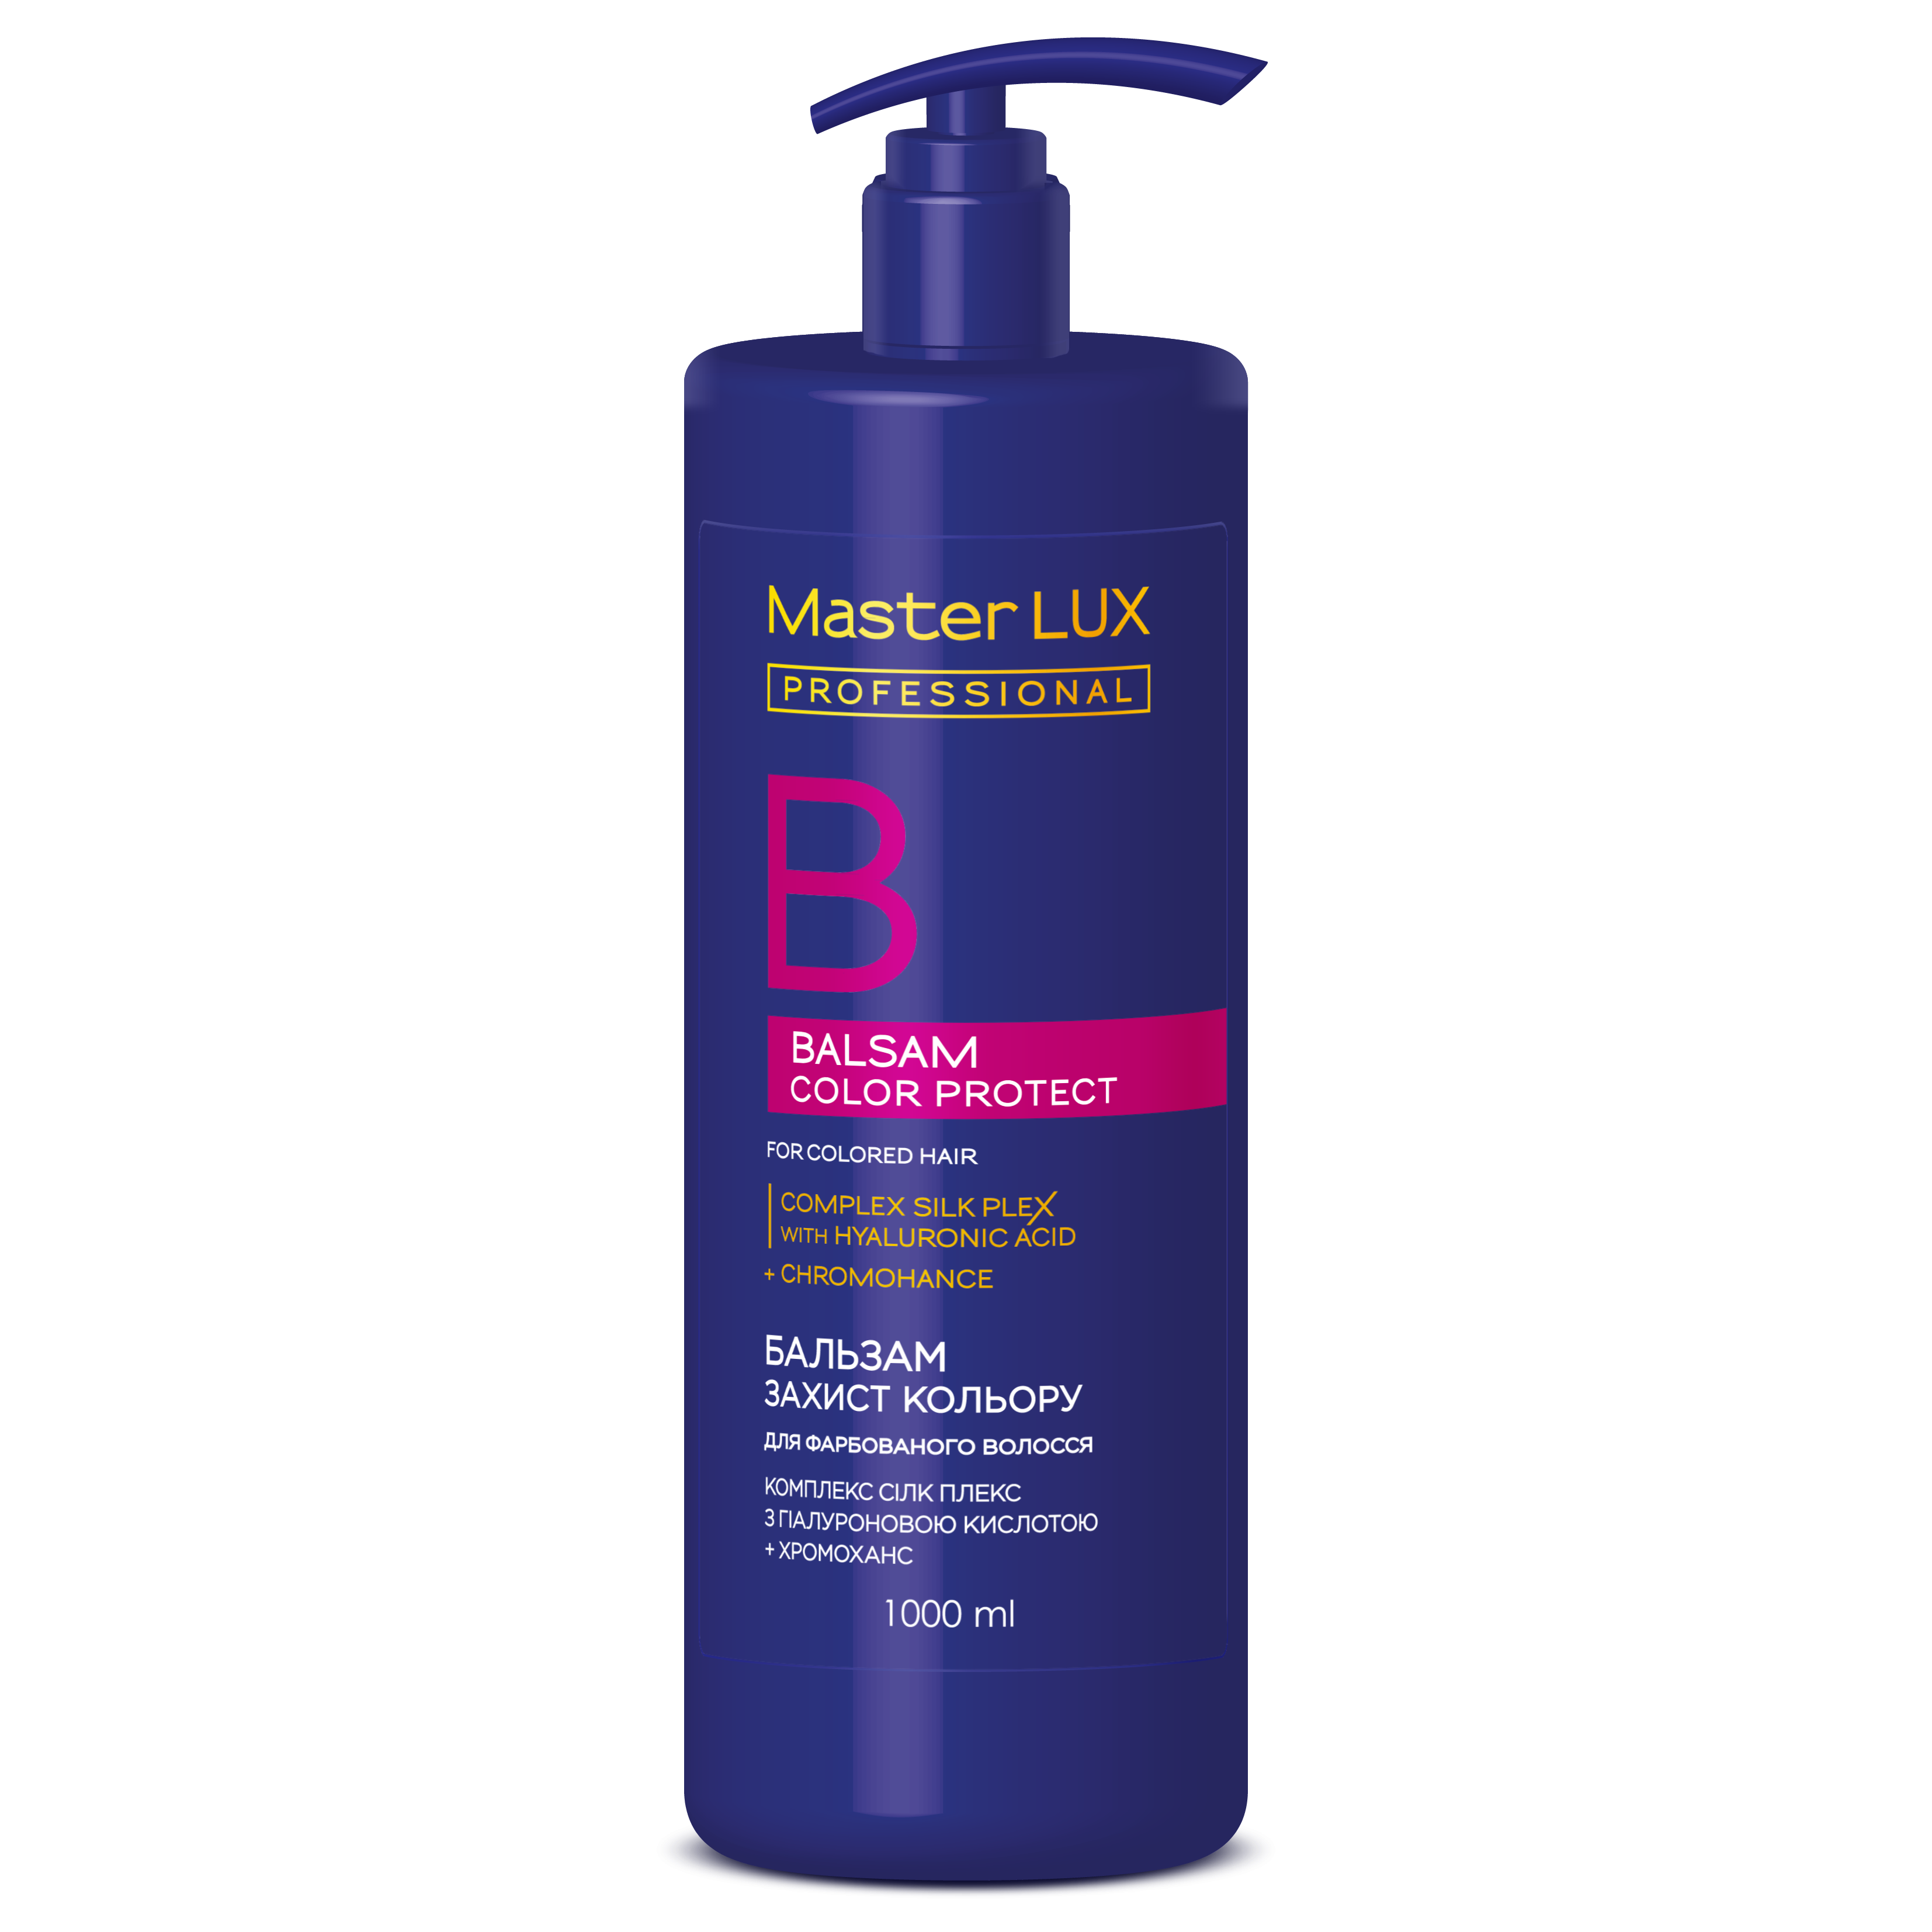 Бальзам для фарбованого волосся - Захист кольору COLOR PROTECT Master LUX professional